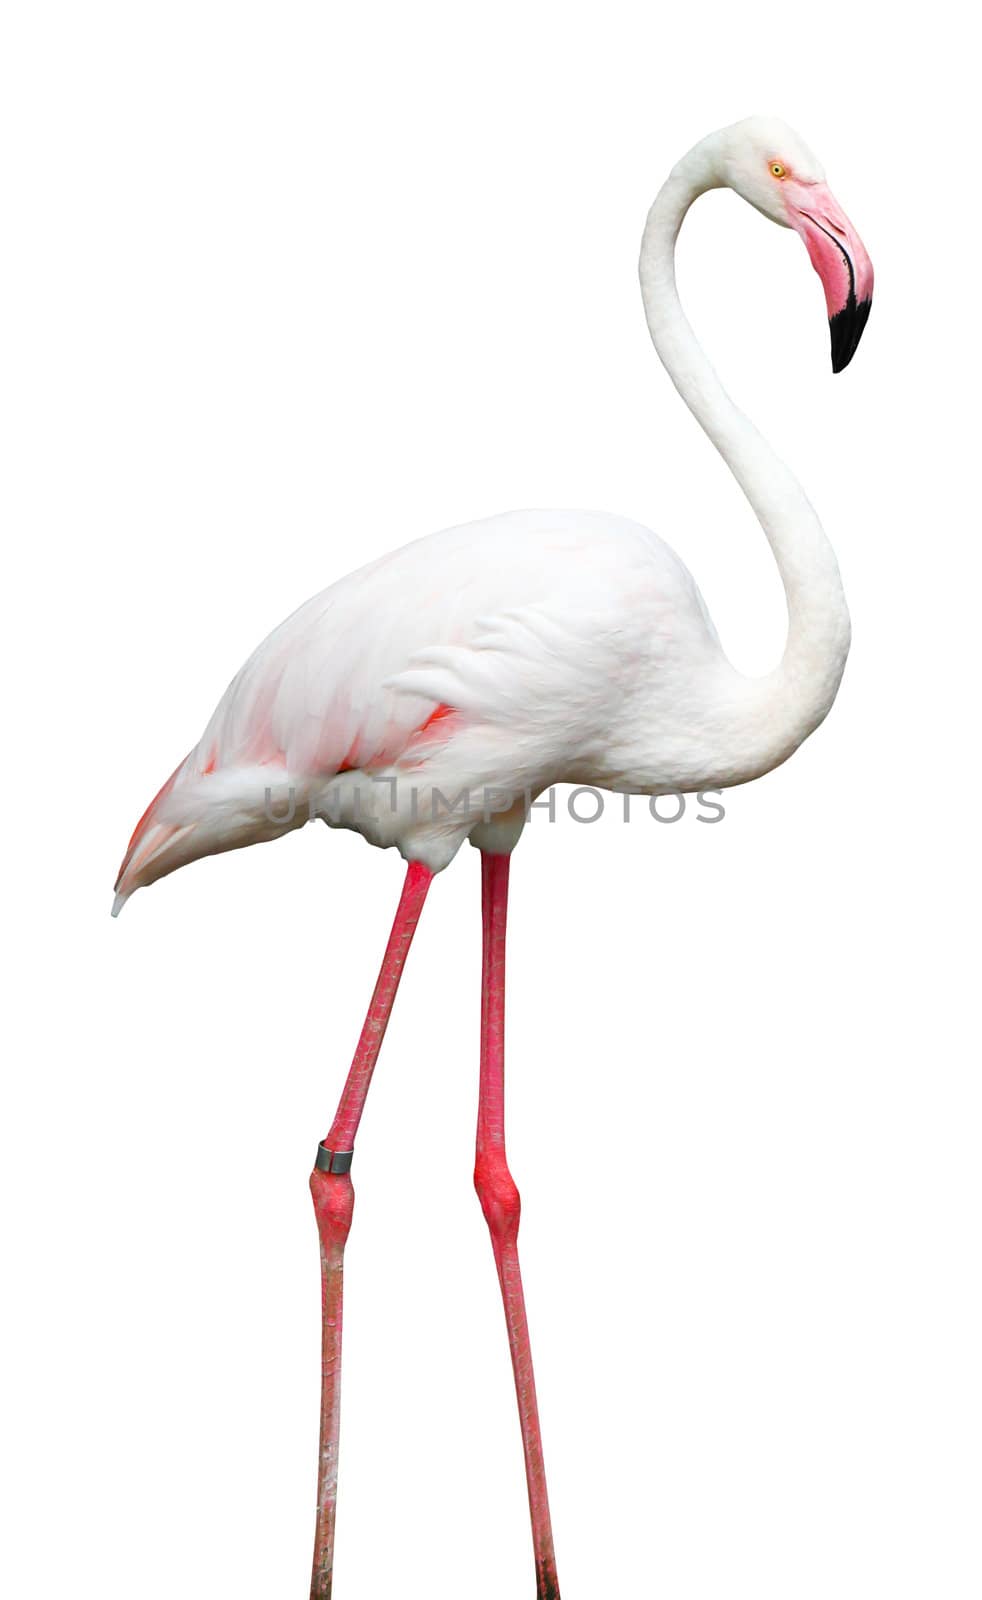 Bird flamingo walking on a white background